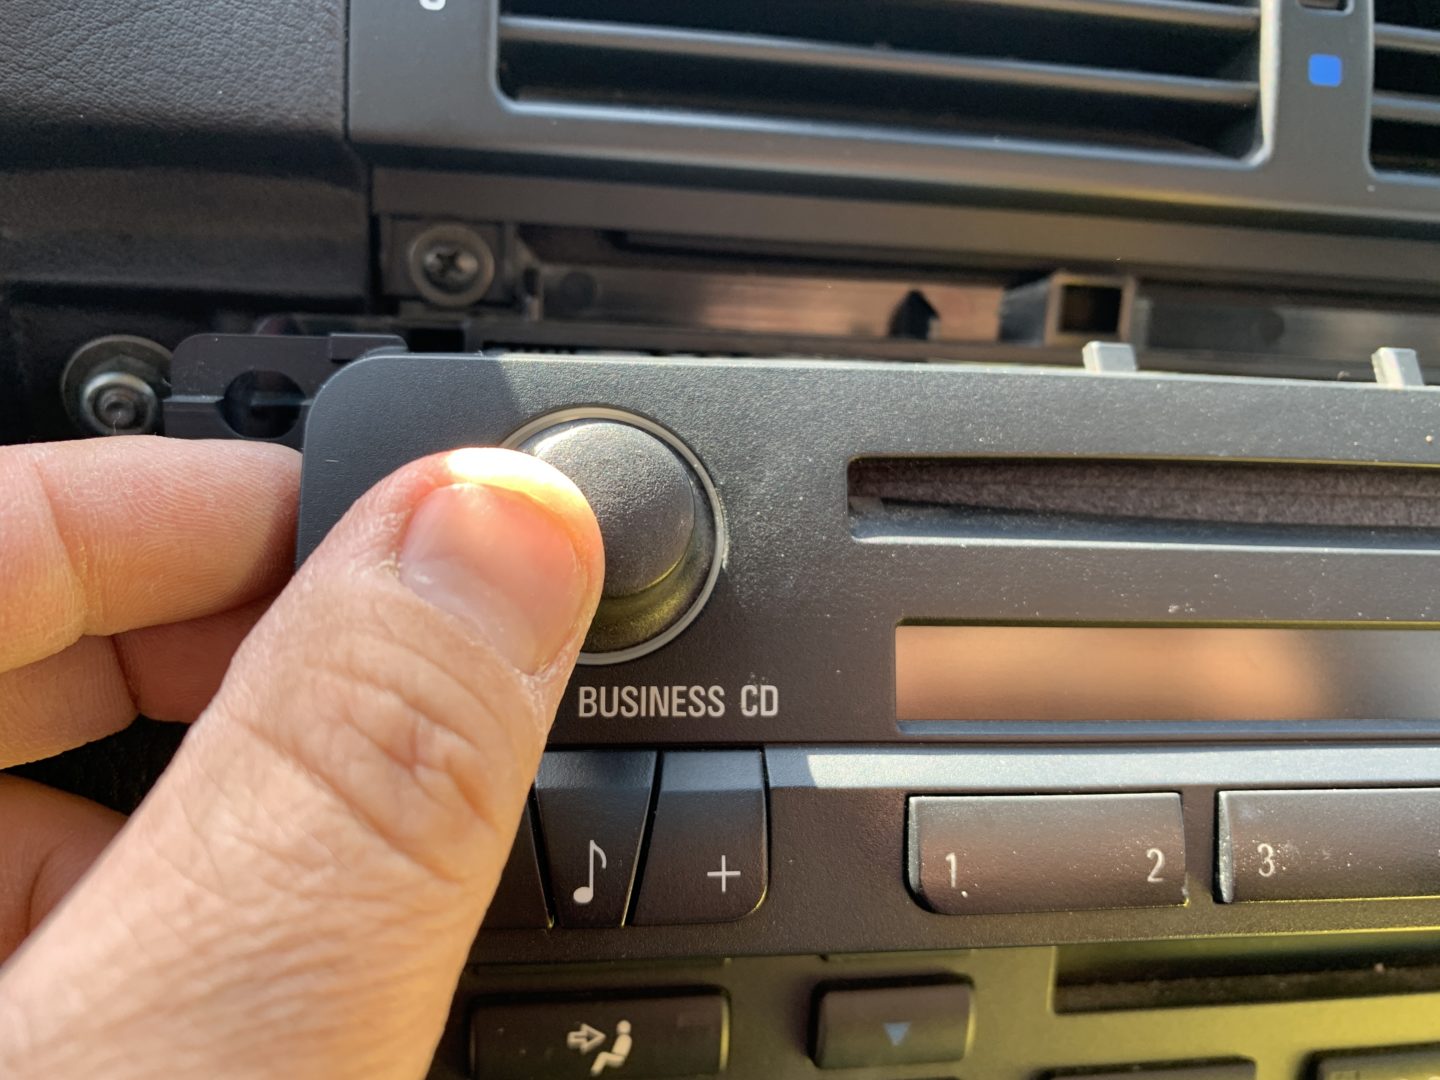 How to Fix a Broken Volume Knob: BMW E46 - The